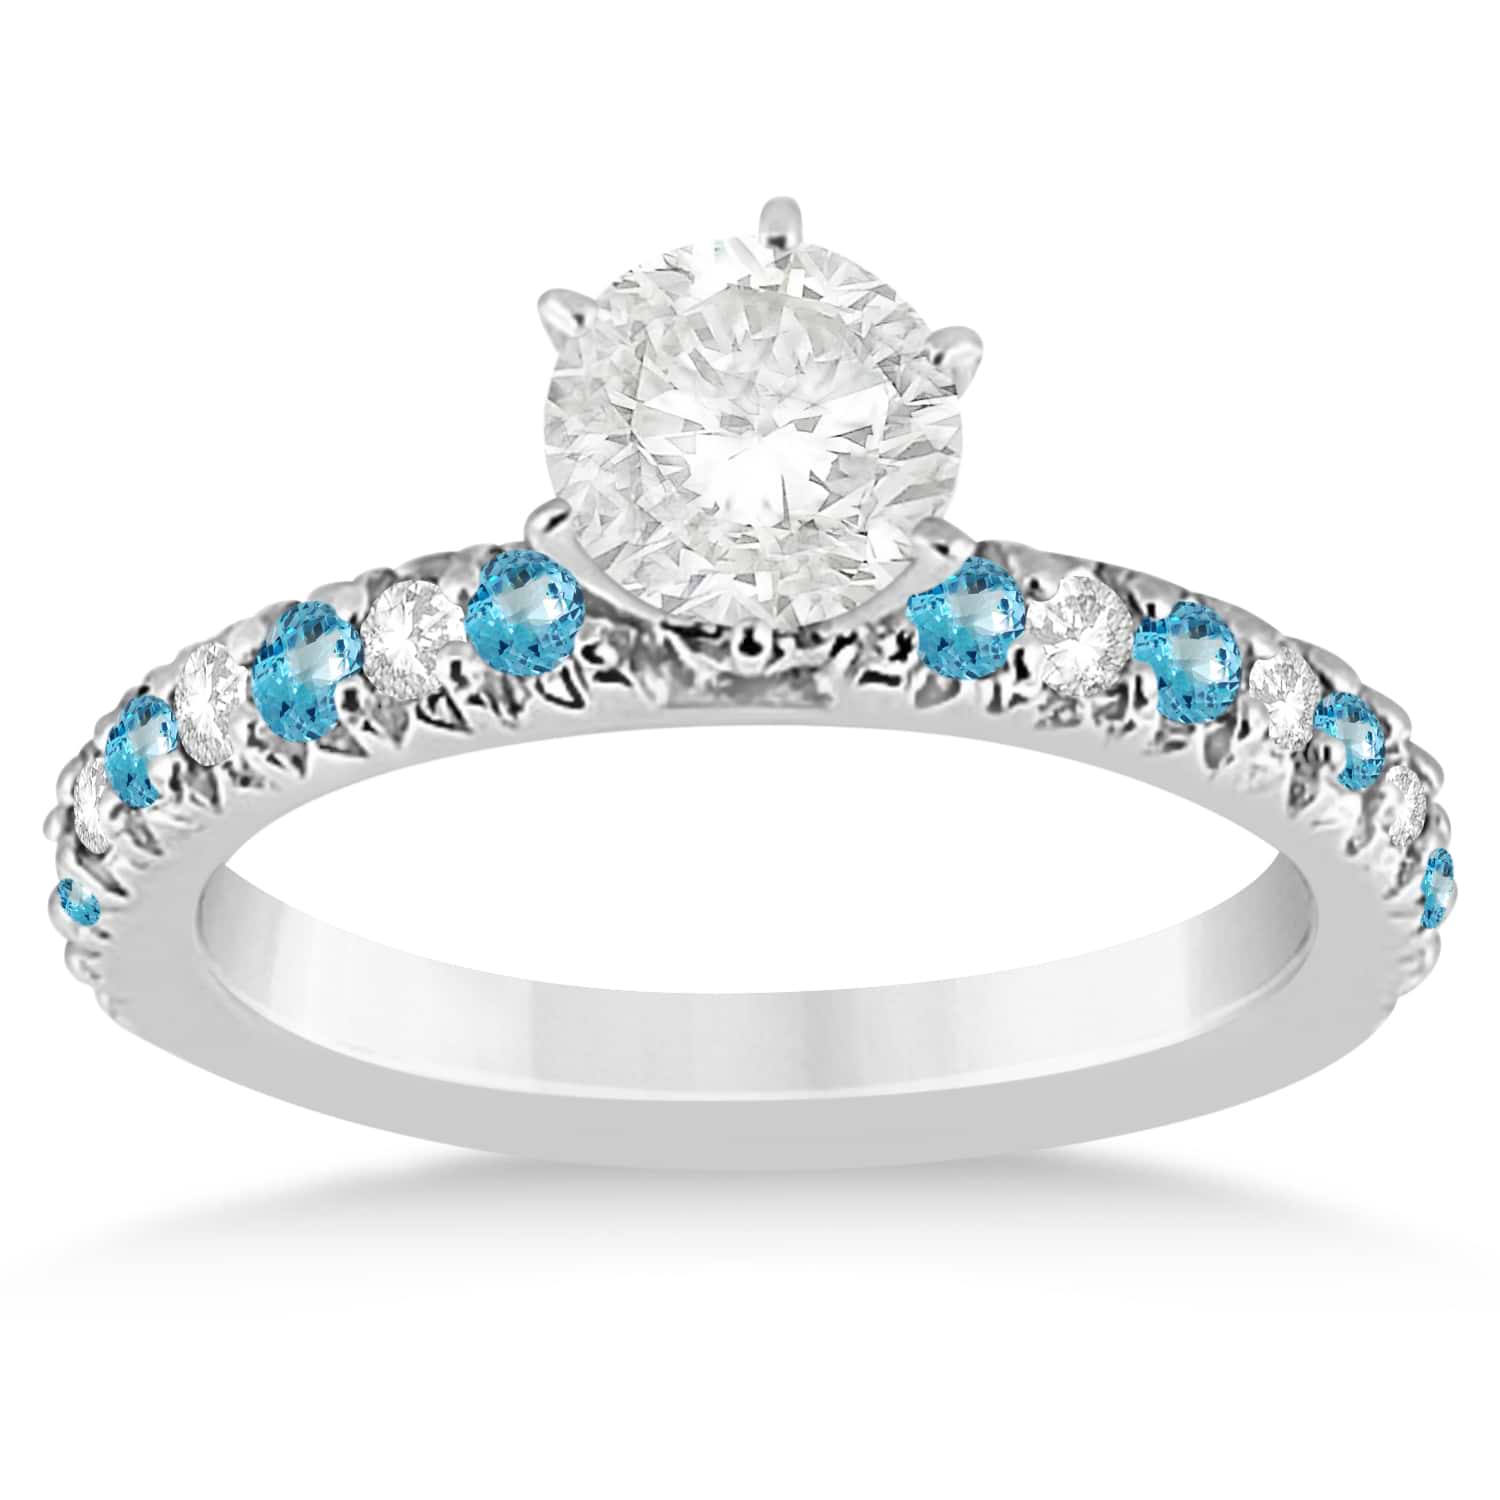 Blue Topaz & Diamond Engagement Ring Setting 14k White Gold 0.54ct